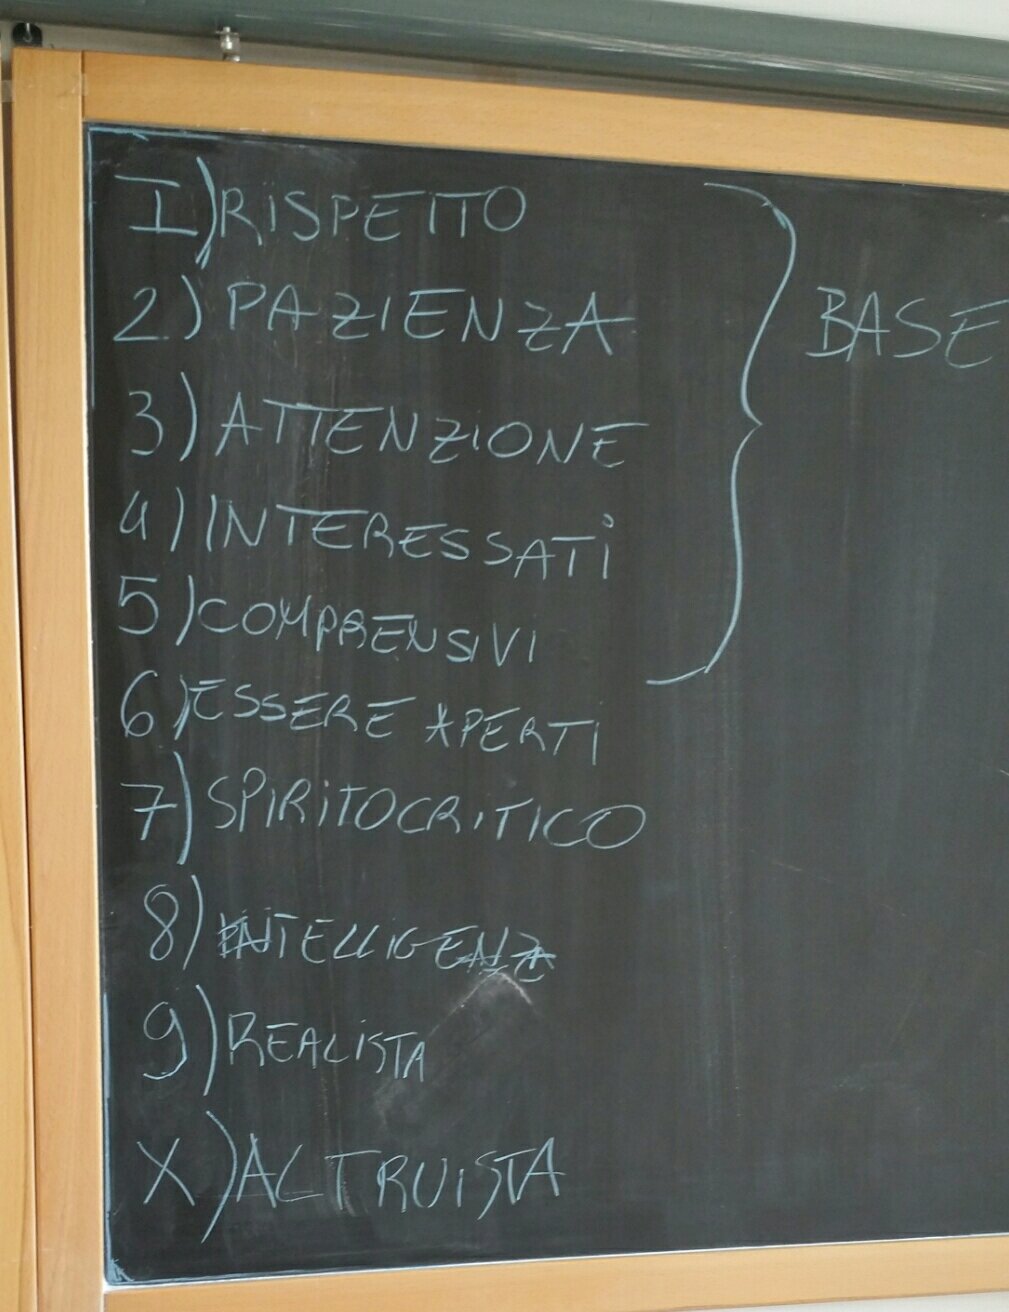 Alternanza scuola-lavoro e Avvocati: oggi al Liceo scientifico di Urbino per parlare di gestione dei conflitti